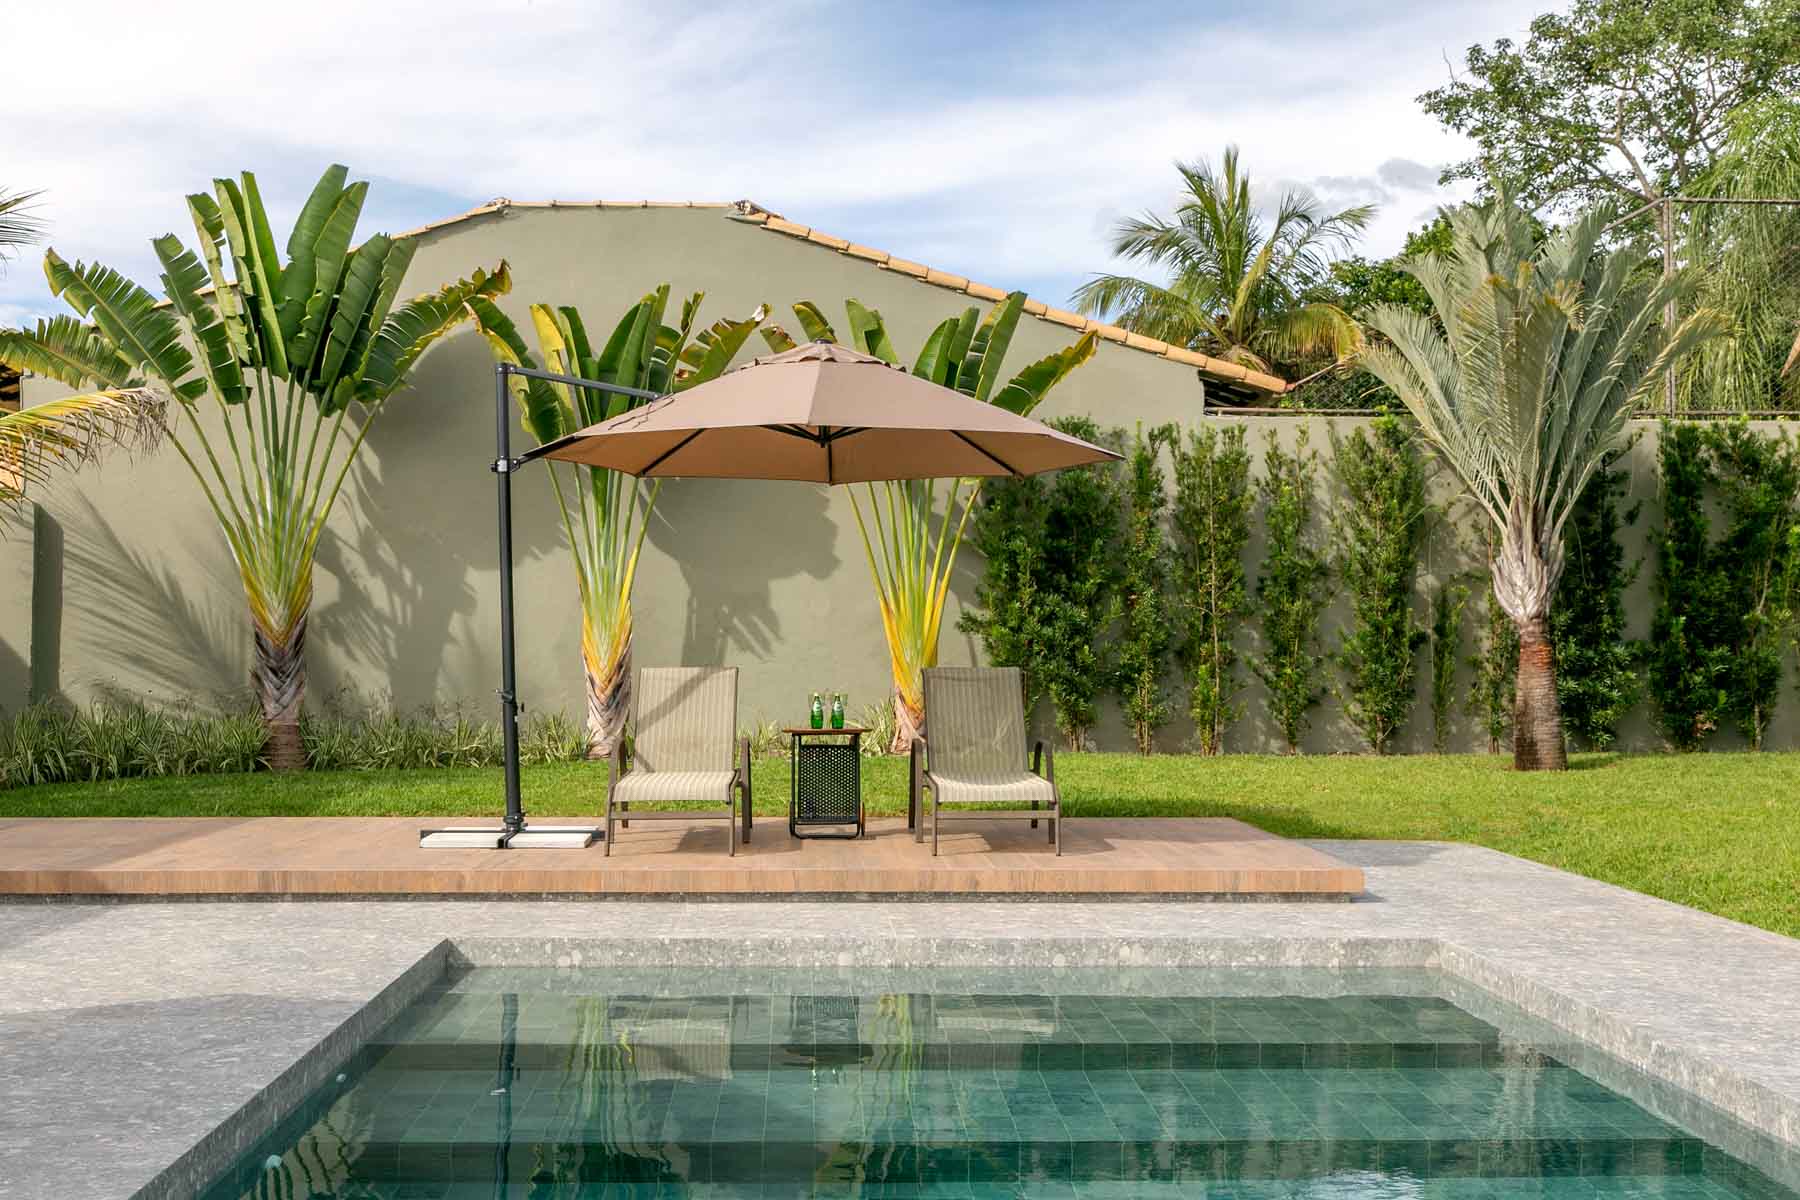 Área externa com piscina e jardim com ombrelone  eespreguiçadeiras. Porcelanato cinza na piscina e bordas sobreposto por porcelanato terracotta na área das espreguiçadeiras